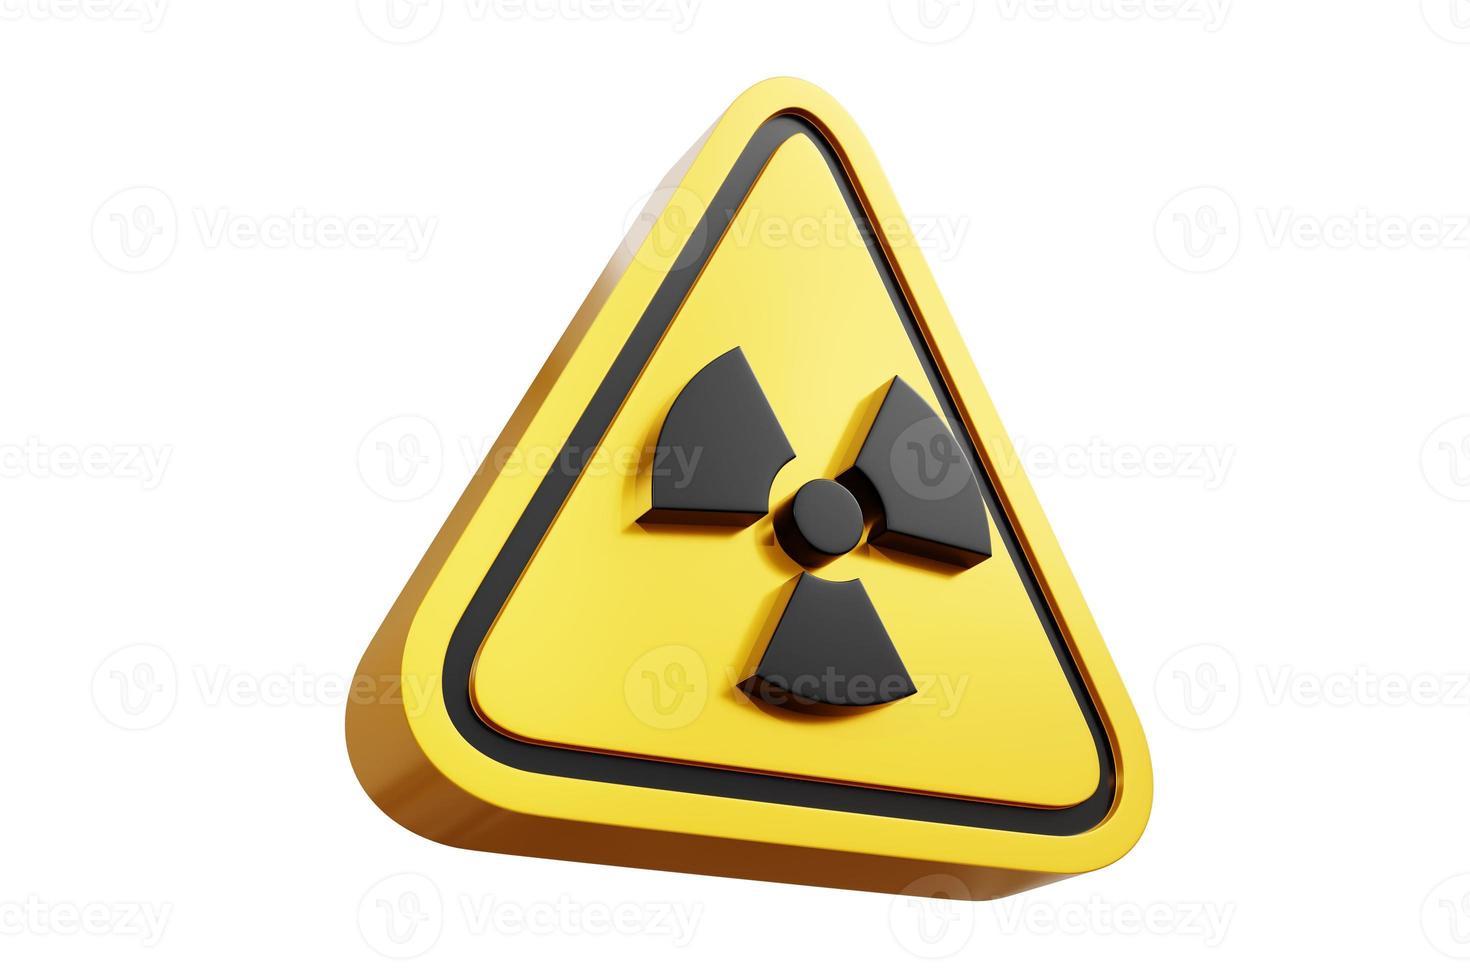 3D-Darstellung von gelben Warnzeichen Symbol Gefahrensymbole für Radioaktivität, Kernenergie, Schadstoffe, Strahlung, biologische Chemikalien, Chemikalien, Umweltverschmutzung, Reaktoren - Beschneidungspfad foto